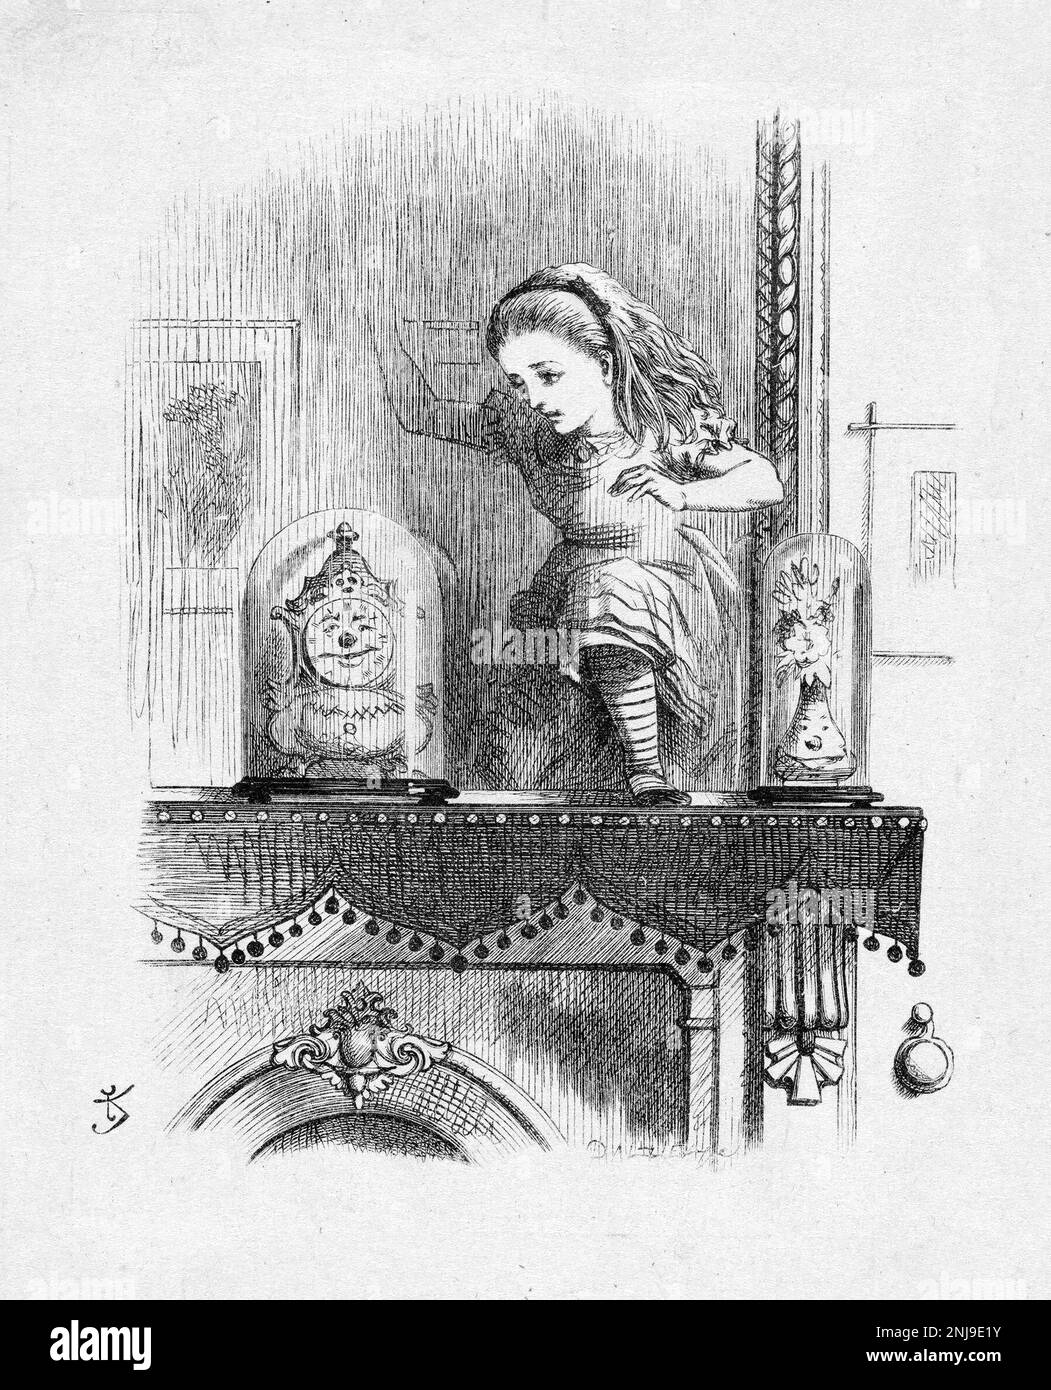 Par le regard de verre une illustration de Sir John Tenniel pour Lewis Carroll "par le regard de verre, et ce qu'Alice a trouvé là", gravure en bois, 1872 Banque D'Images